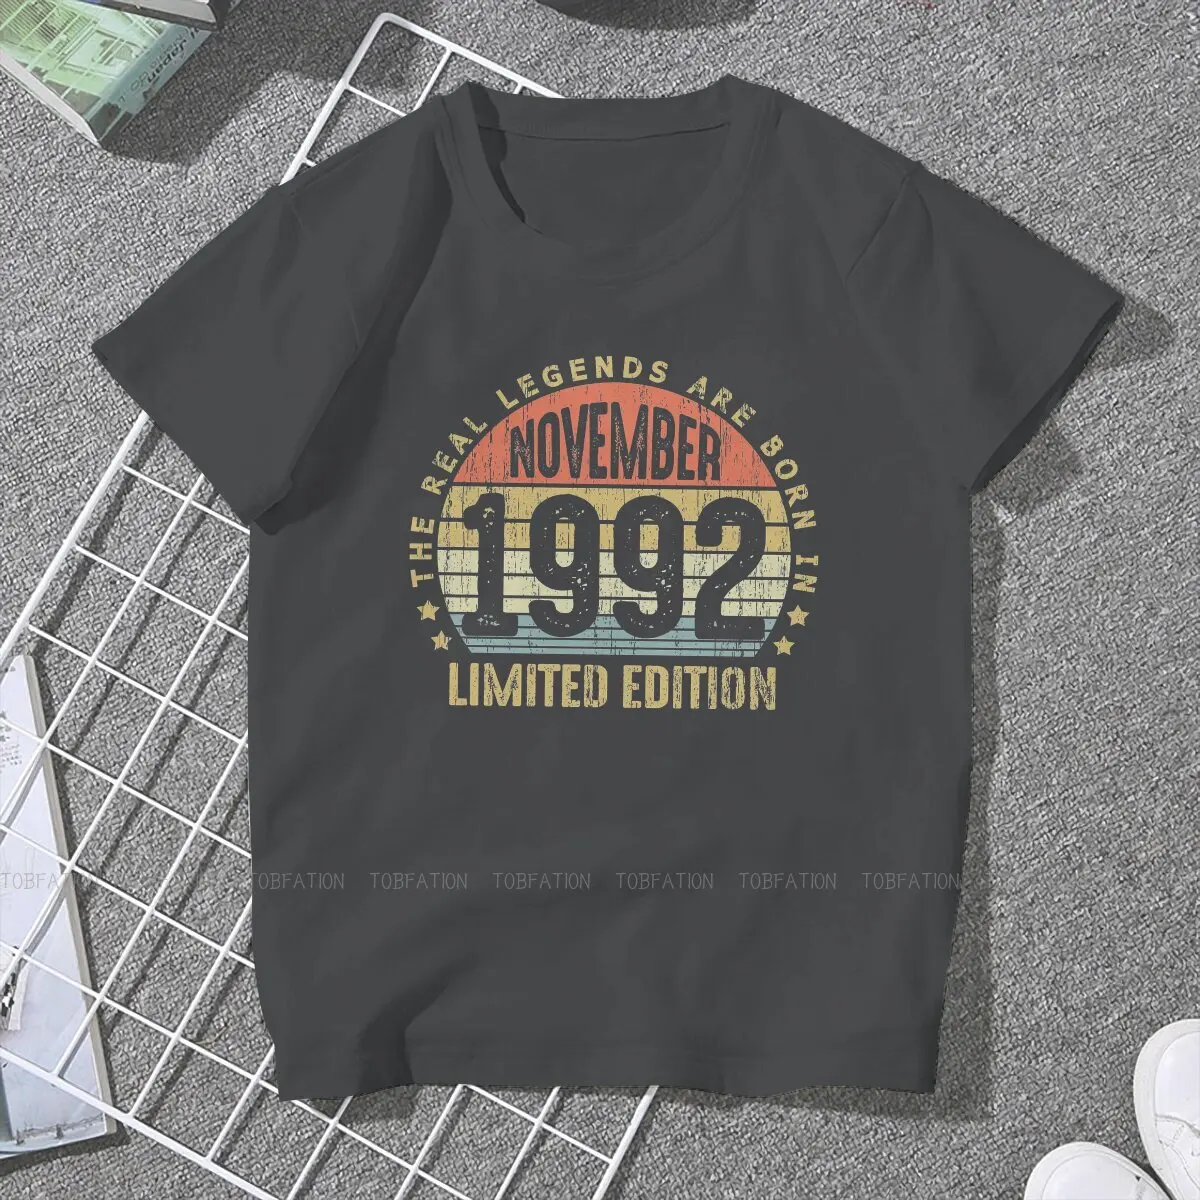 1992 футболки с круглым вырезом отличительная женская футболка на день рождения 30